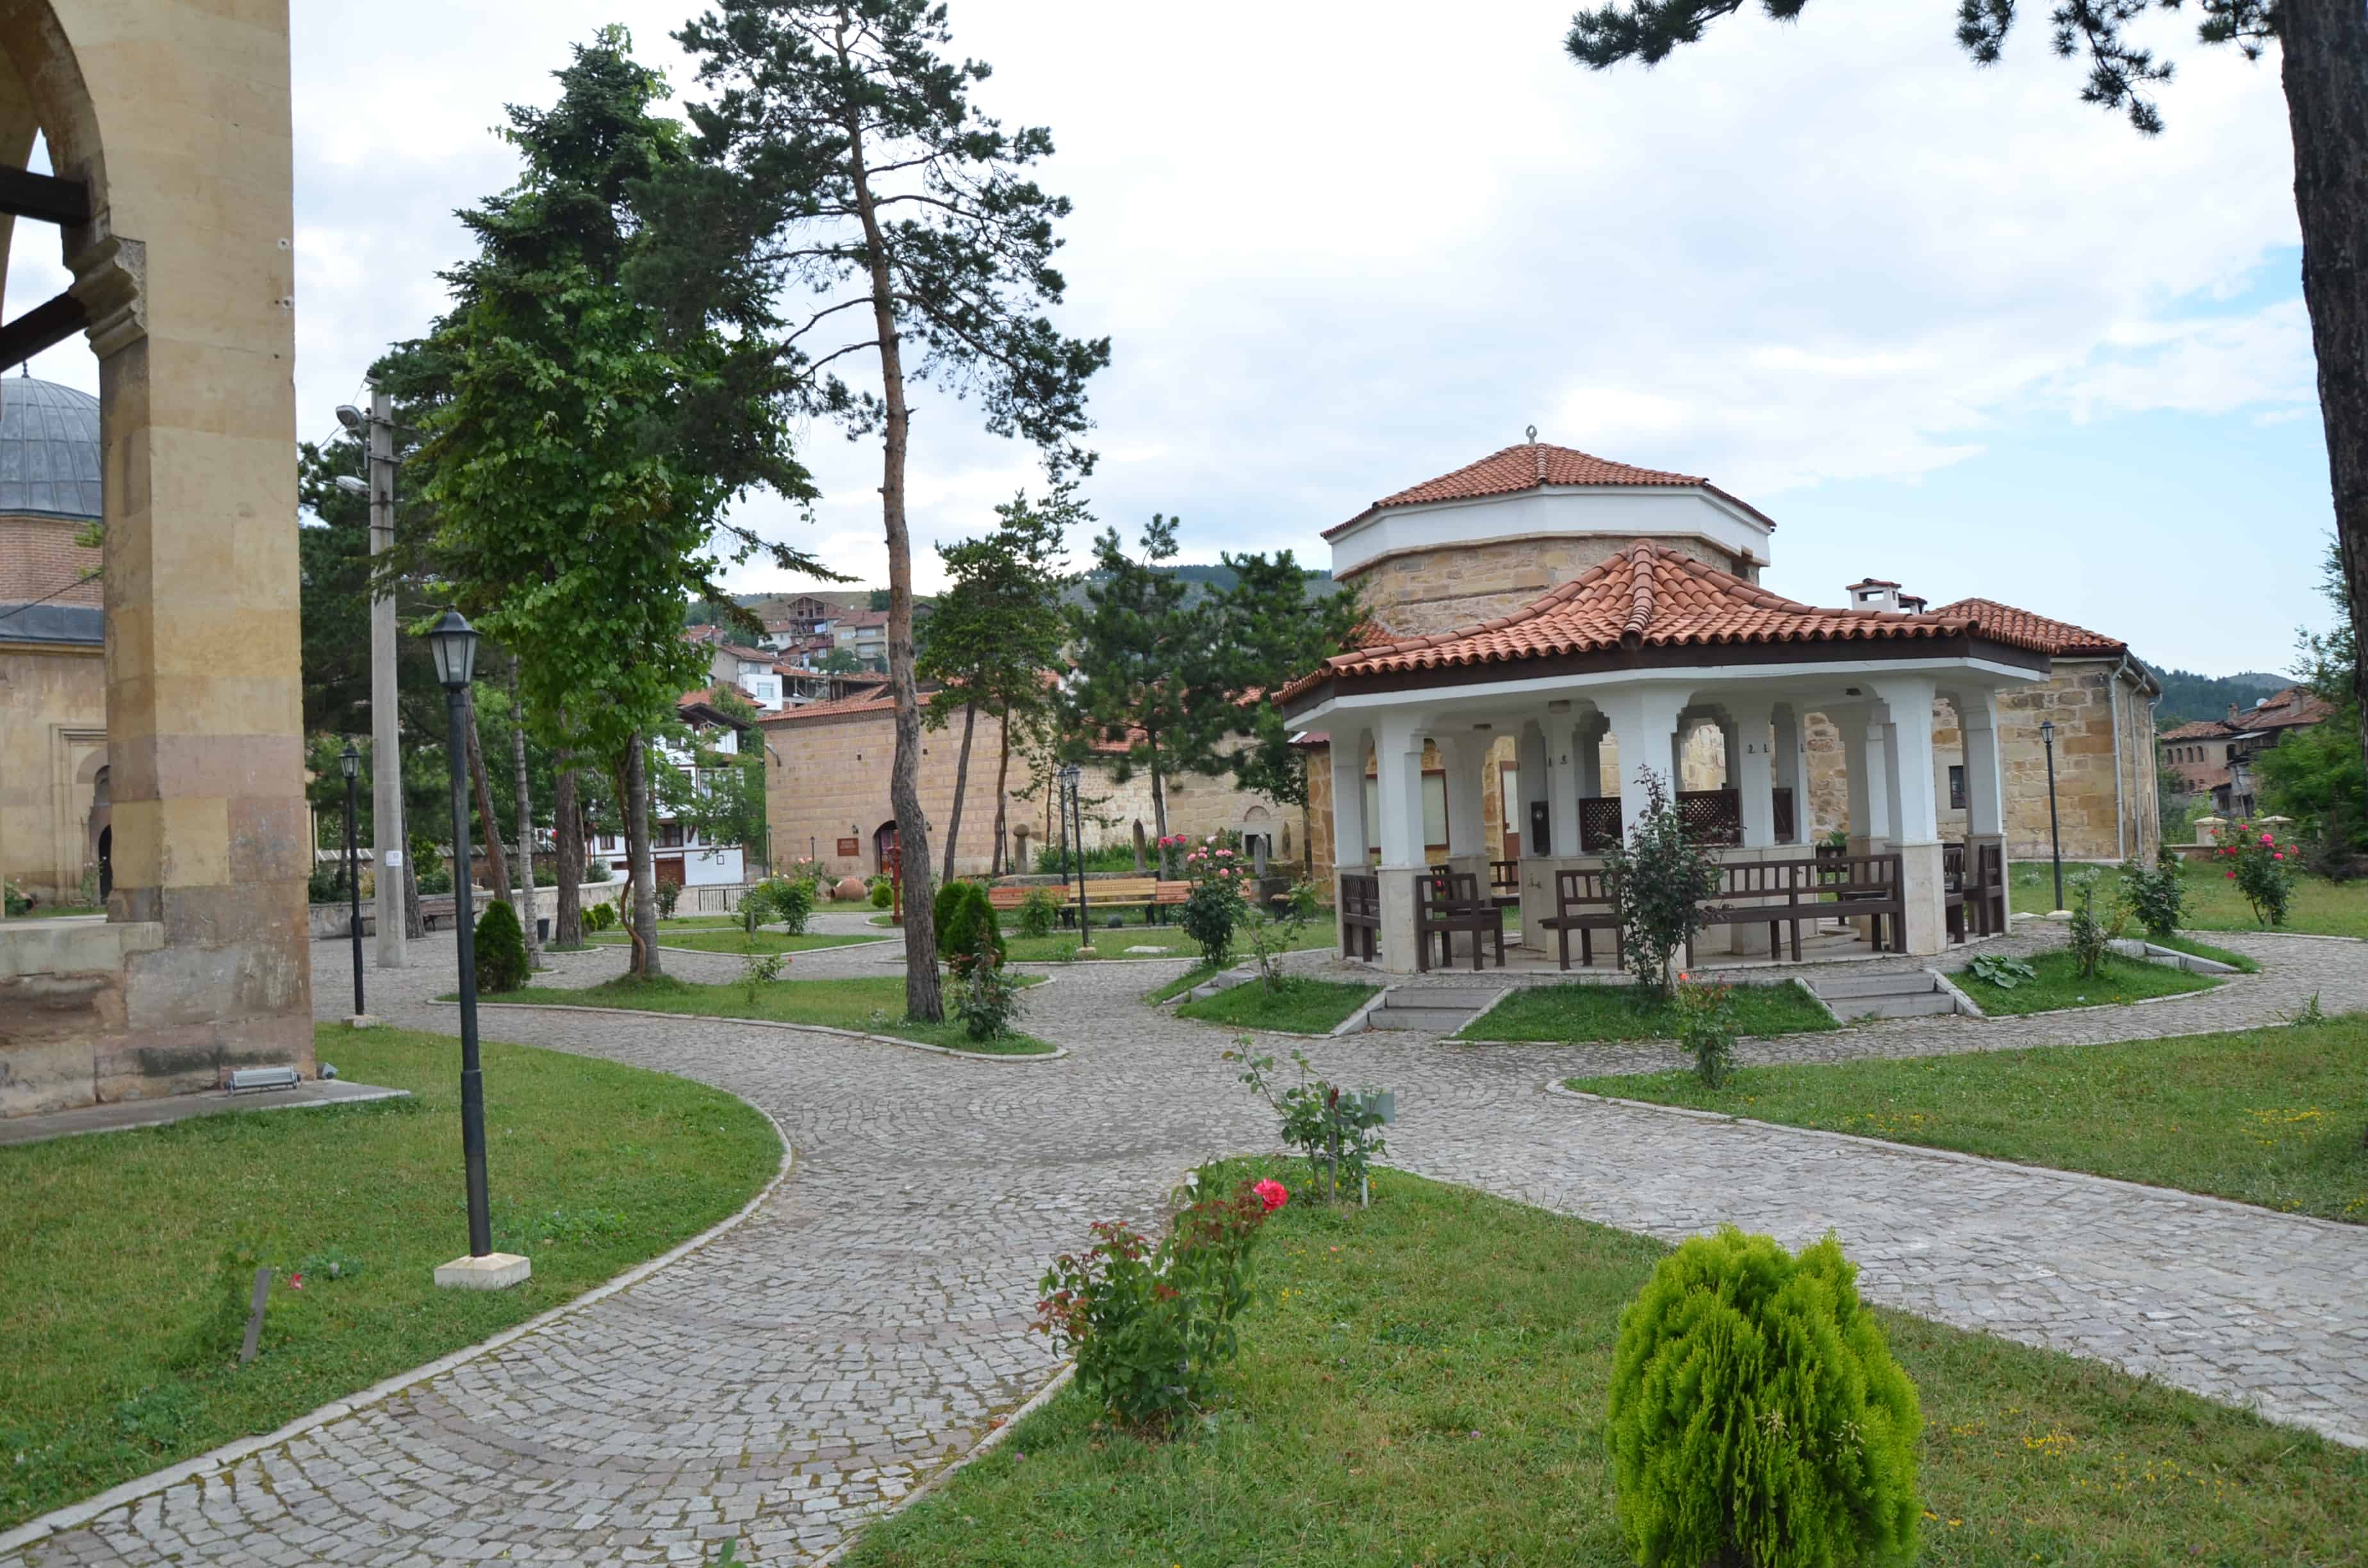 Ismail Bey Complex in Kastamonu, Turkey